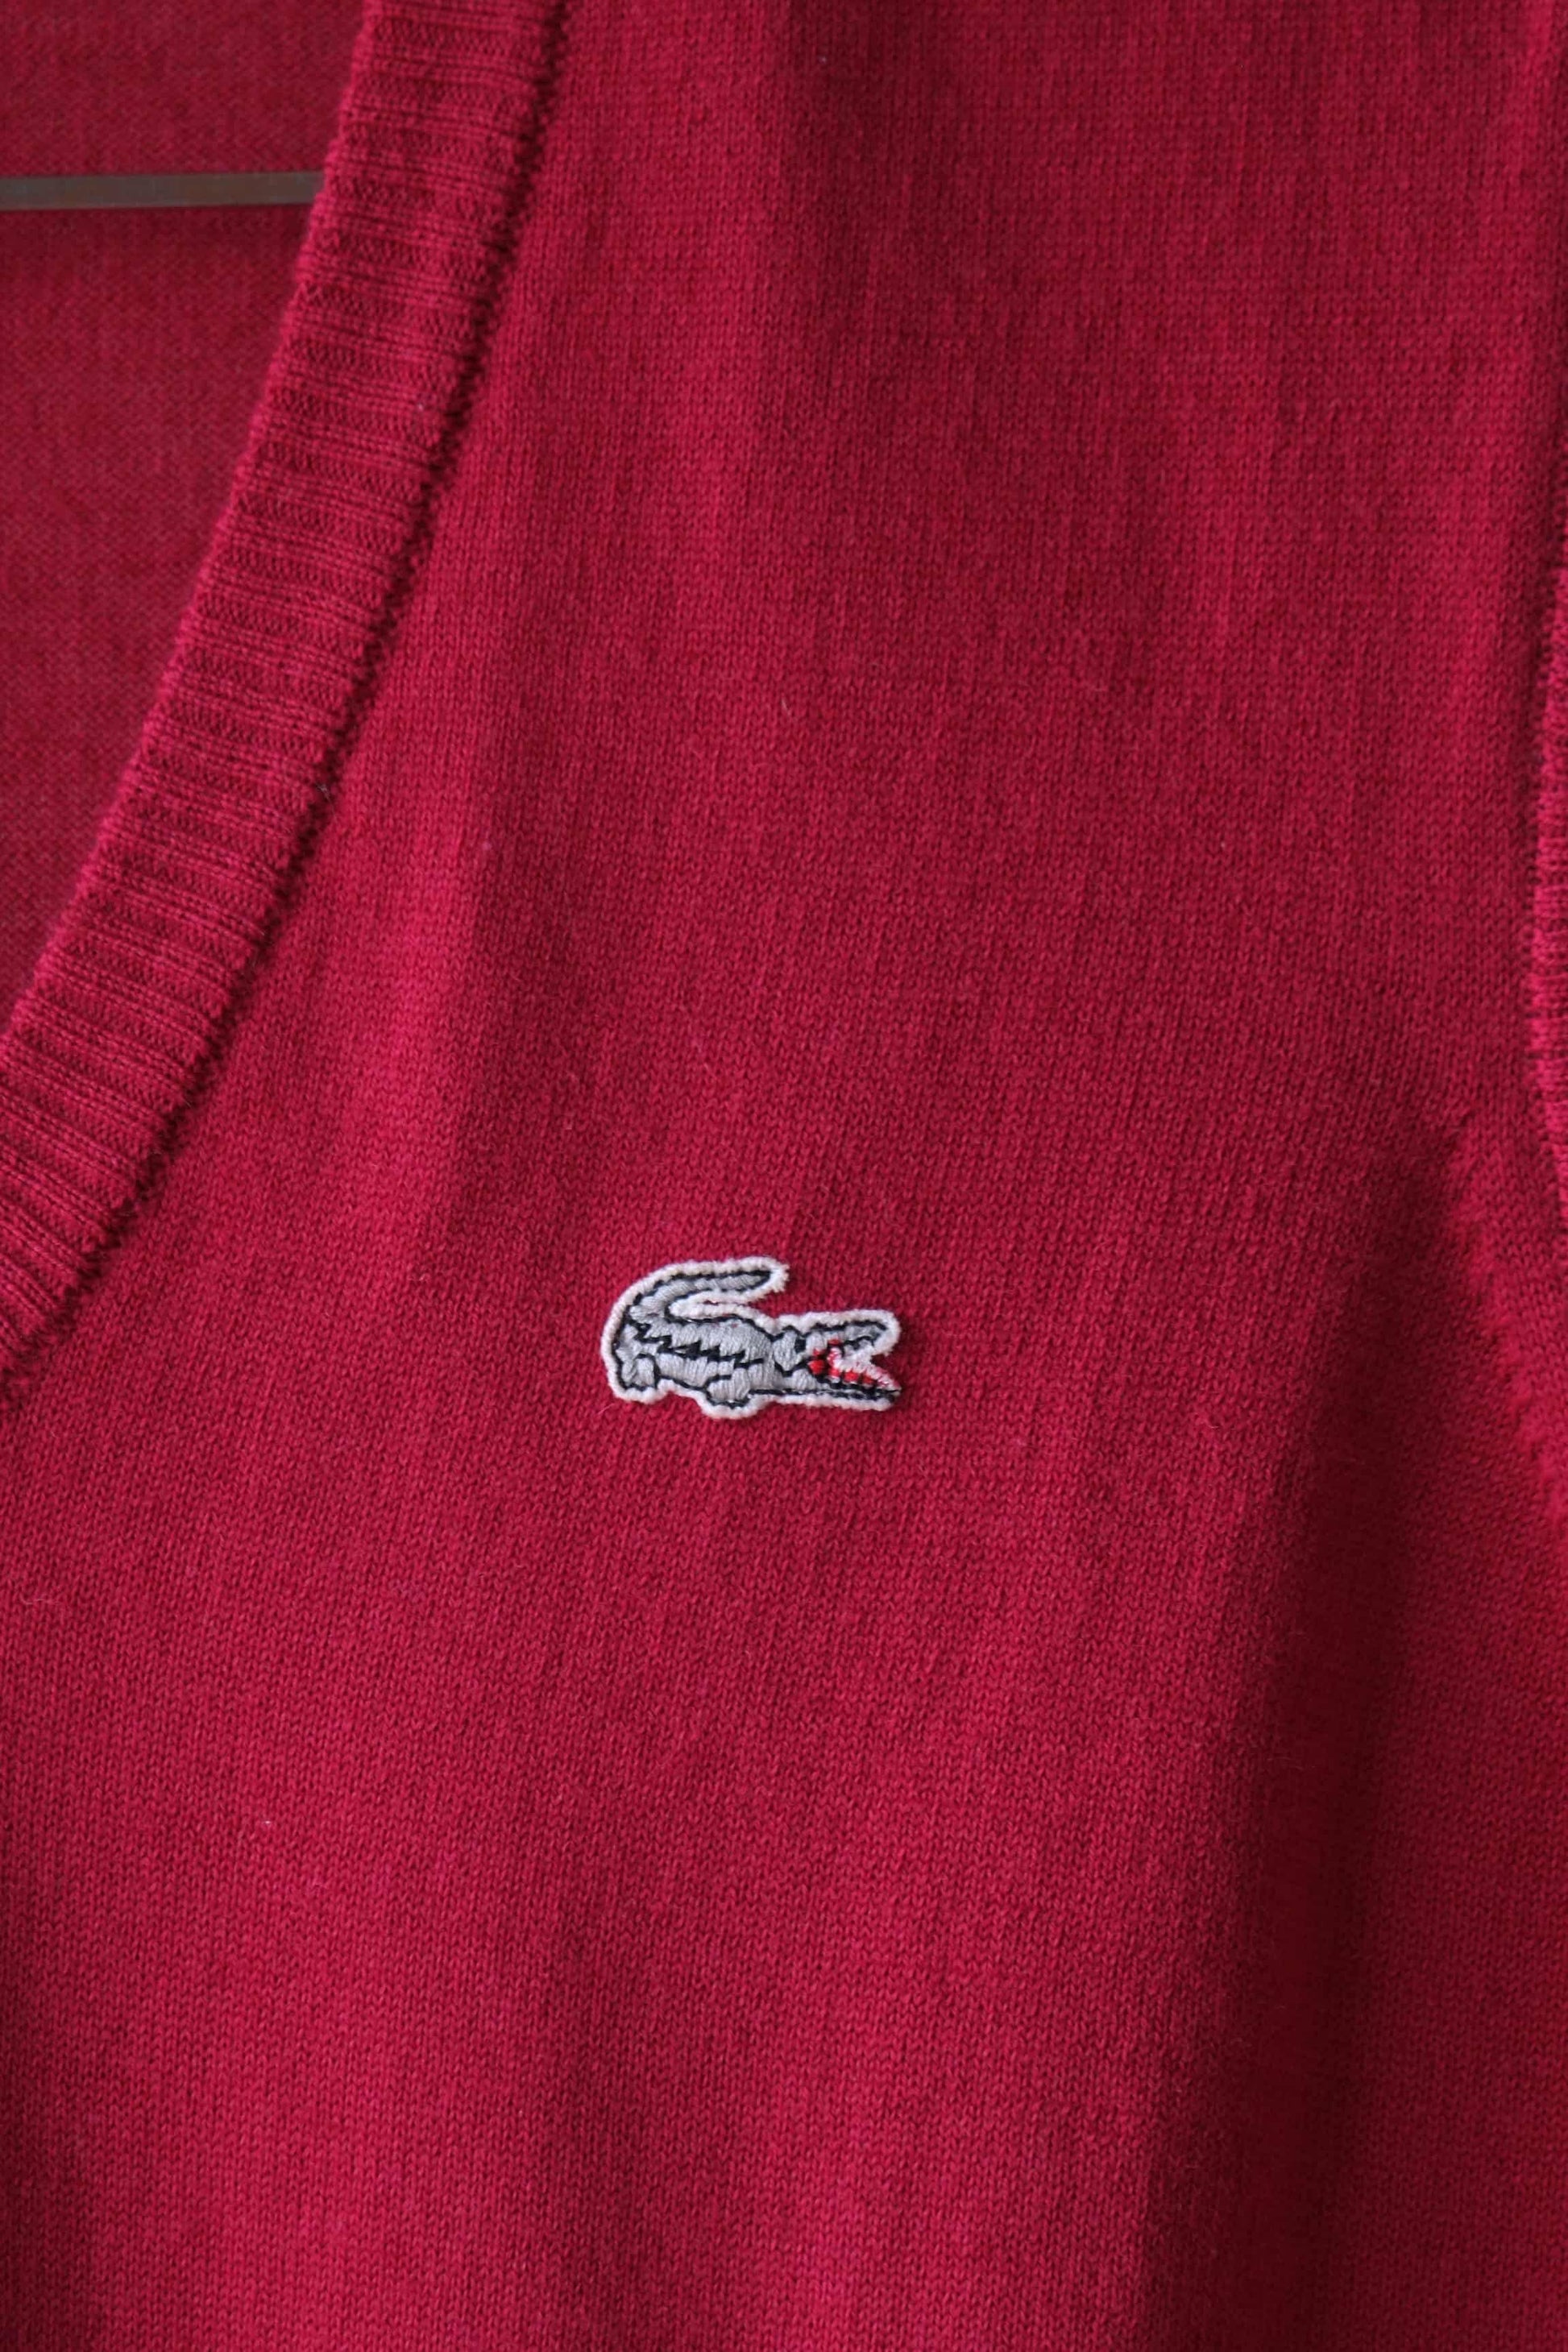 Vintage LACOSTE 80's Sweater Vest logo